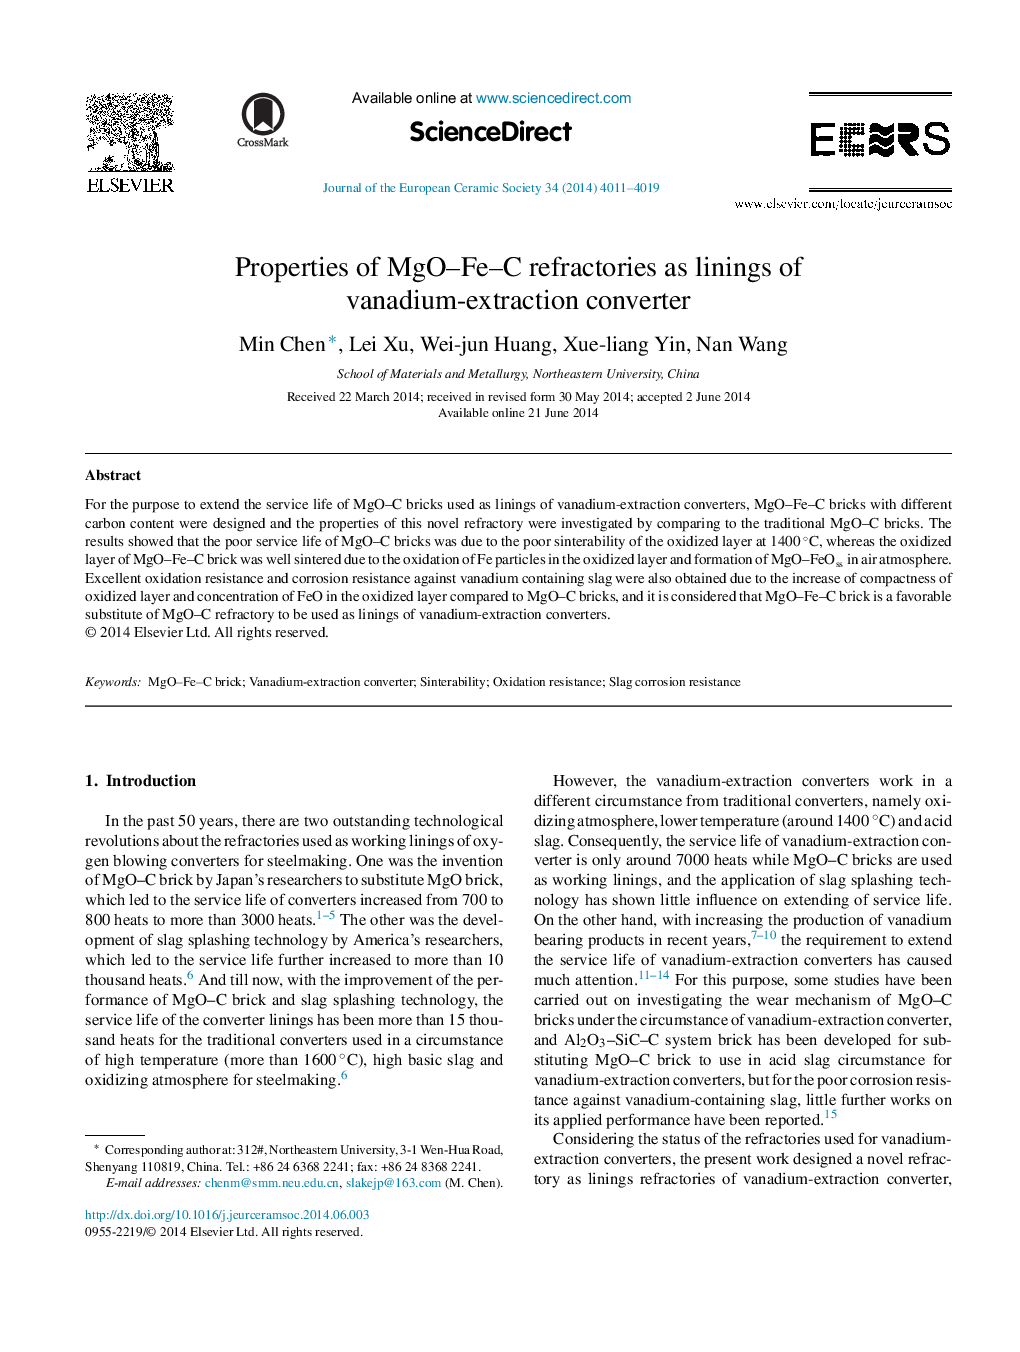 Properties of MgO–Fe–C refractories as linings of vanadium-extraction converter